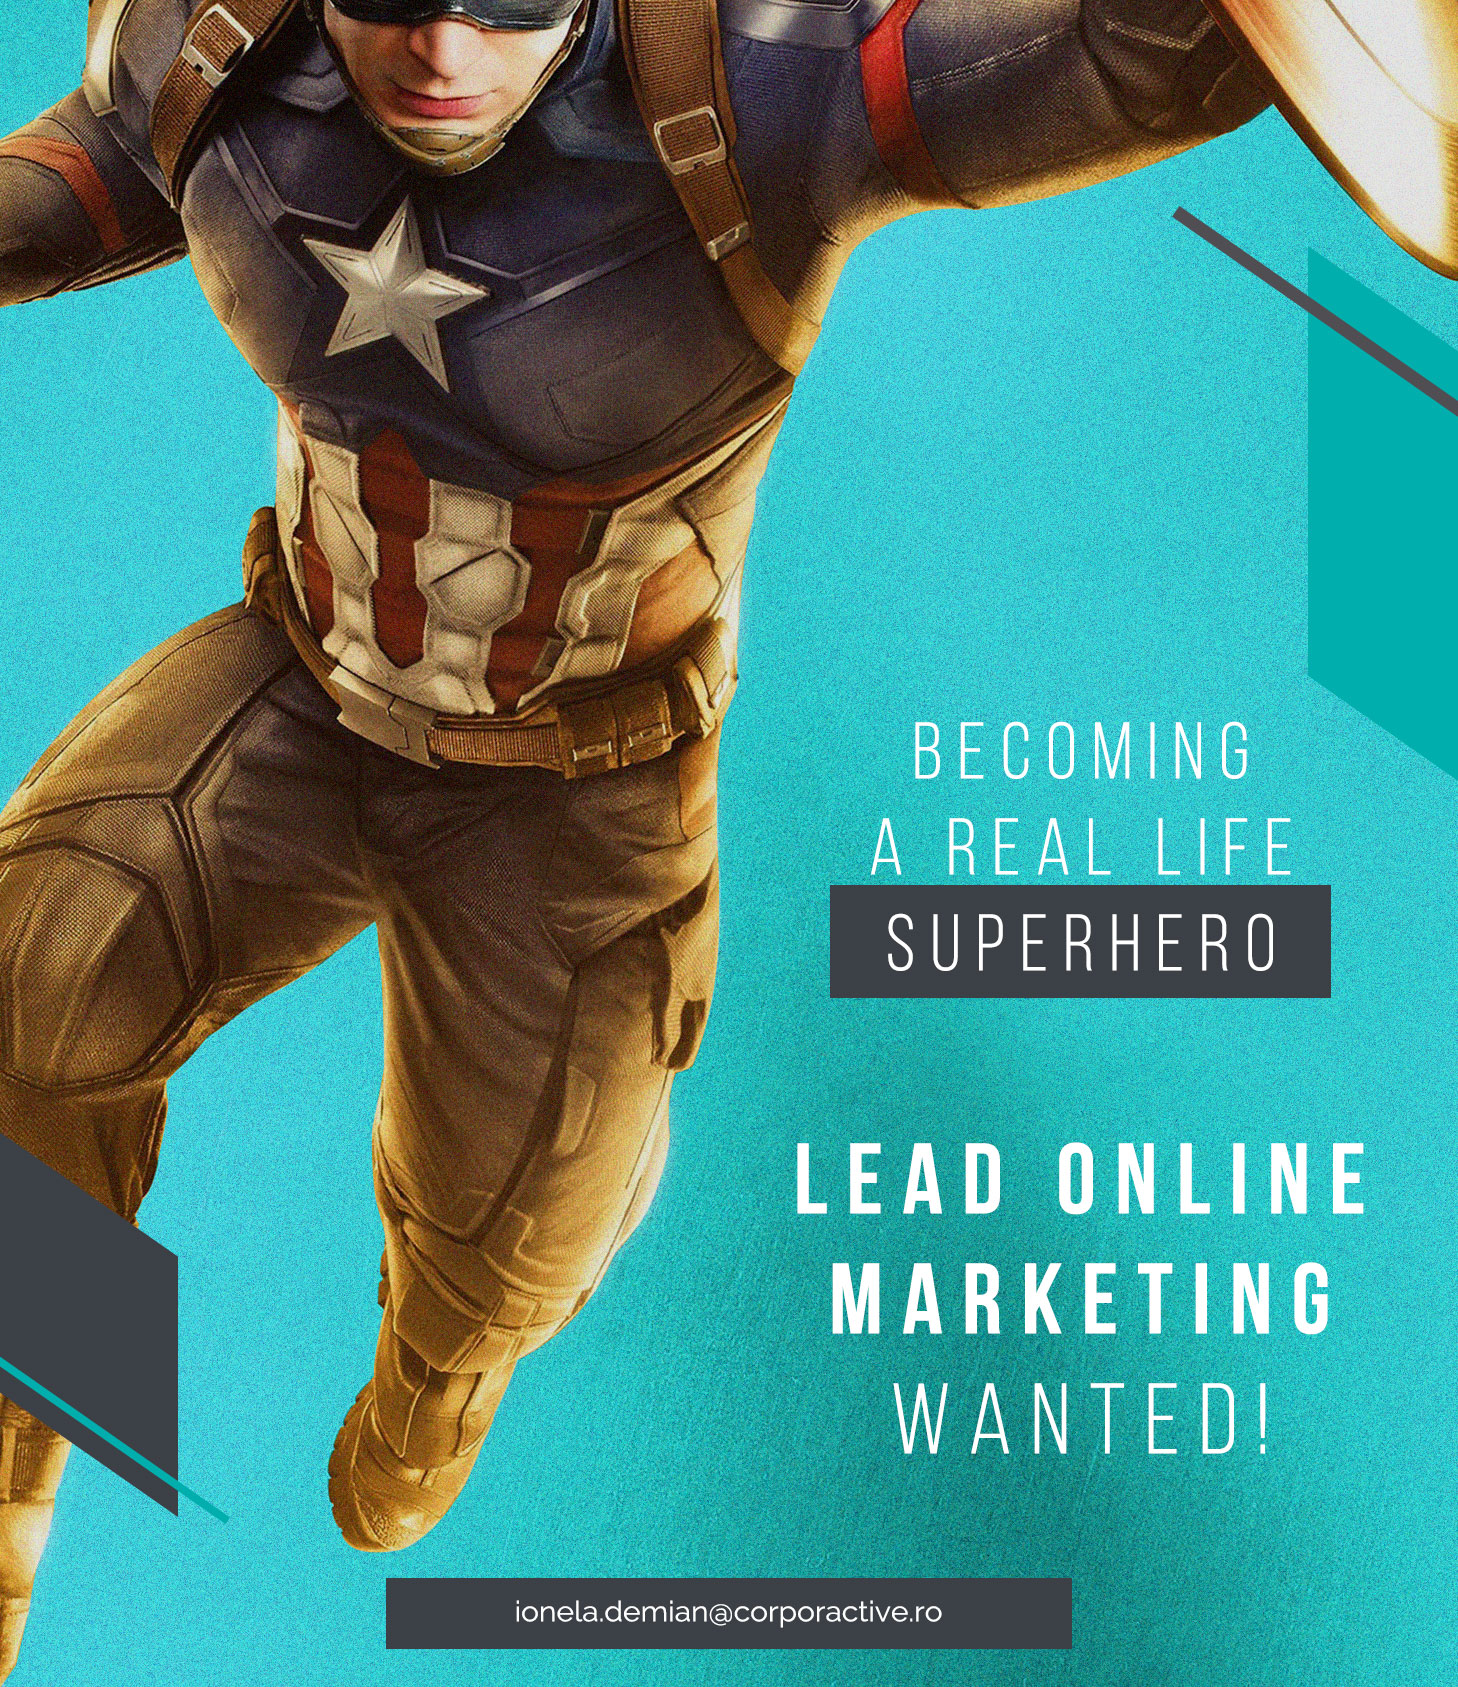 Lead Online Marketing